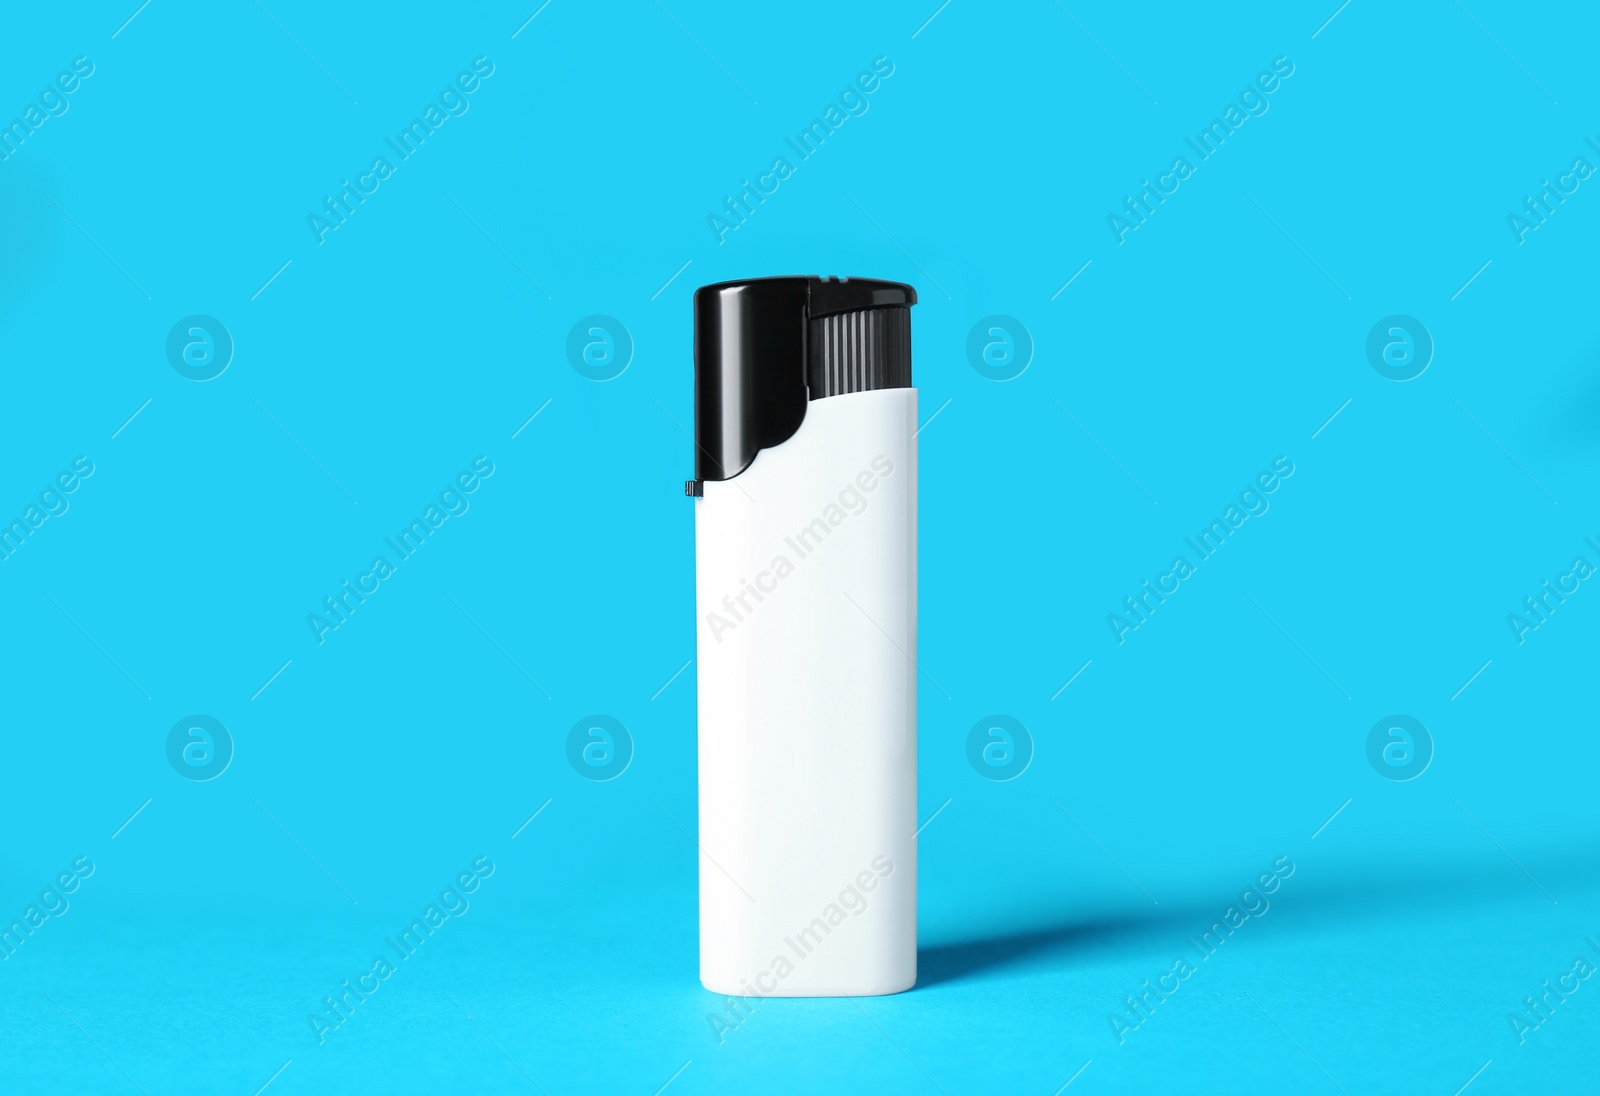 Photo of White plastic cigarette lighter on light blue background